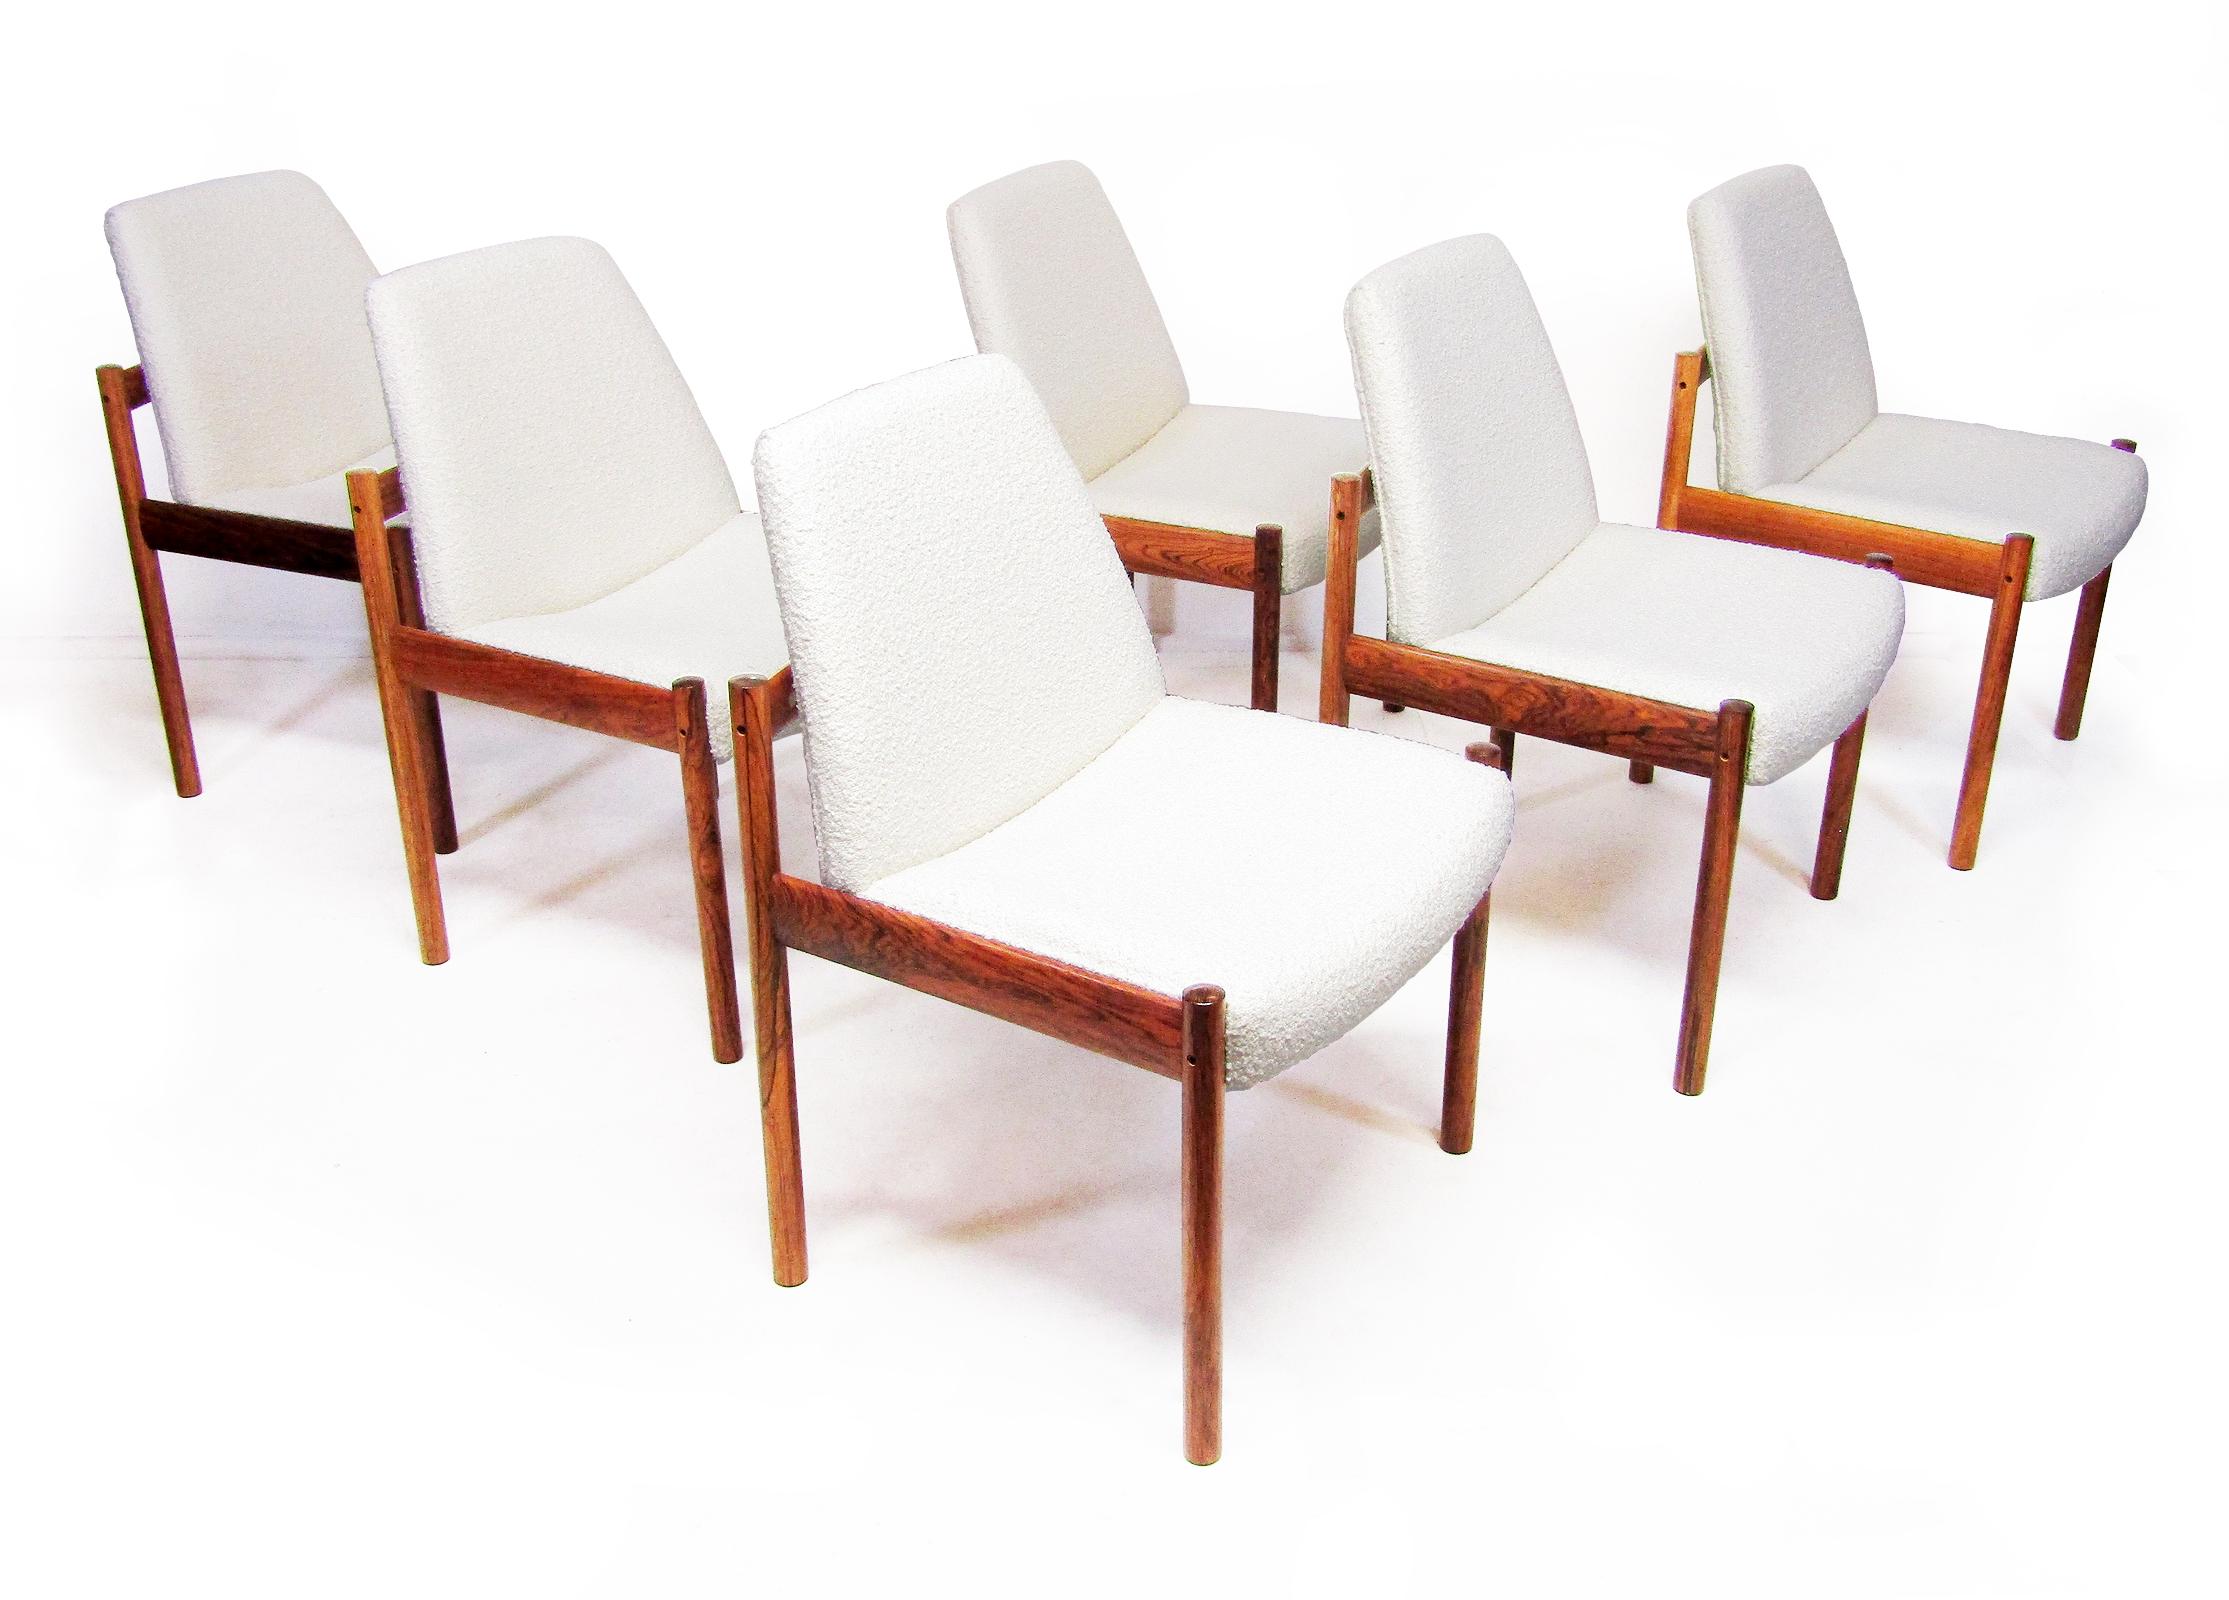 Sechs Ess- oder Konferenzstühle aus Rio-Palisanderholz und Bouclé-Stoff von Sven Ivar Dysthe für Dokka aus den 1960er Jahren.

Sie wurden überholt und neu gepolstert und sind prächtige Beispiele für norwegisches Design aus der Mitte des 20.

Das